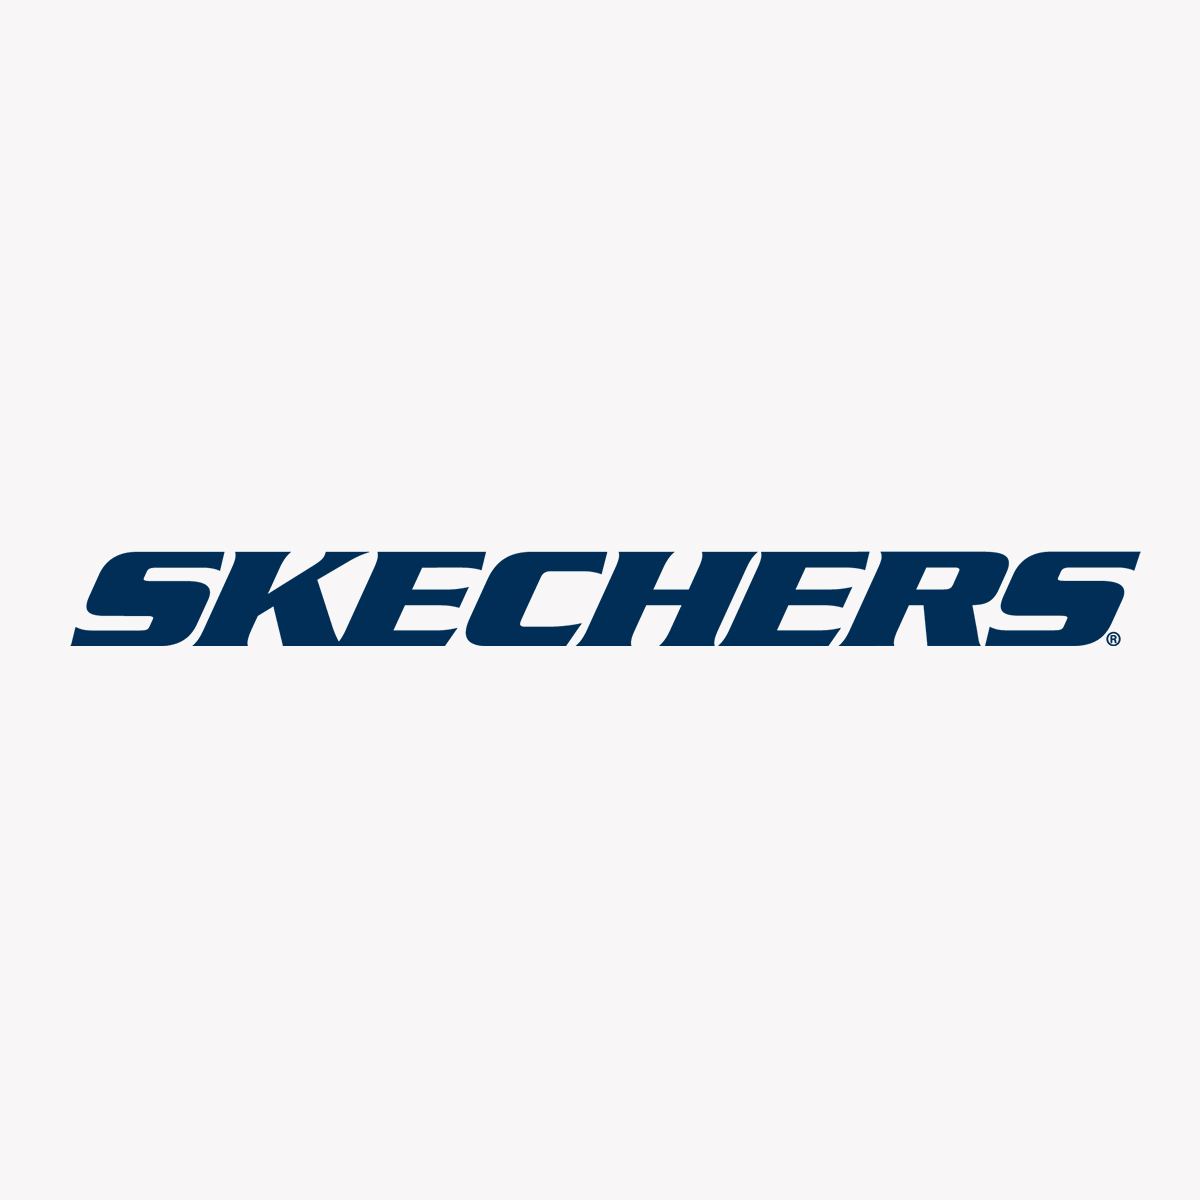 Skechers, Next Galleria Malls